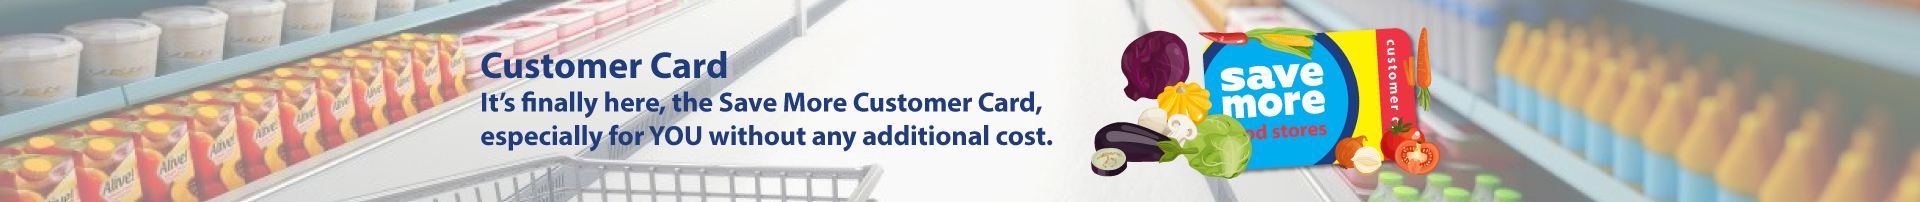 Customer Card